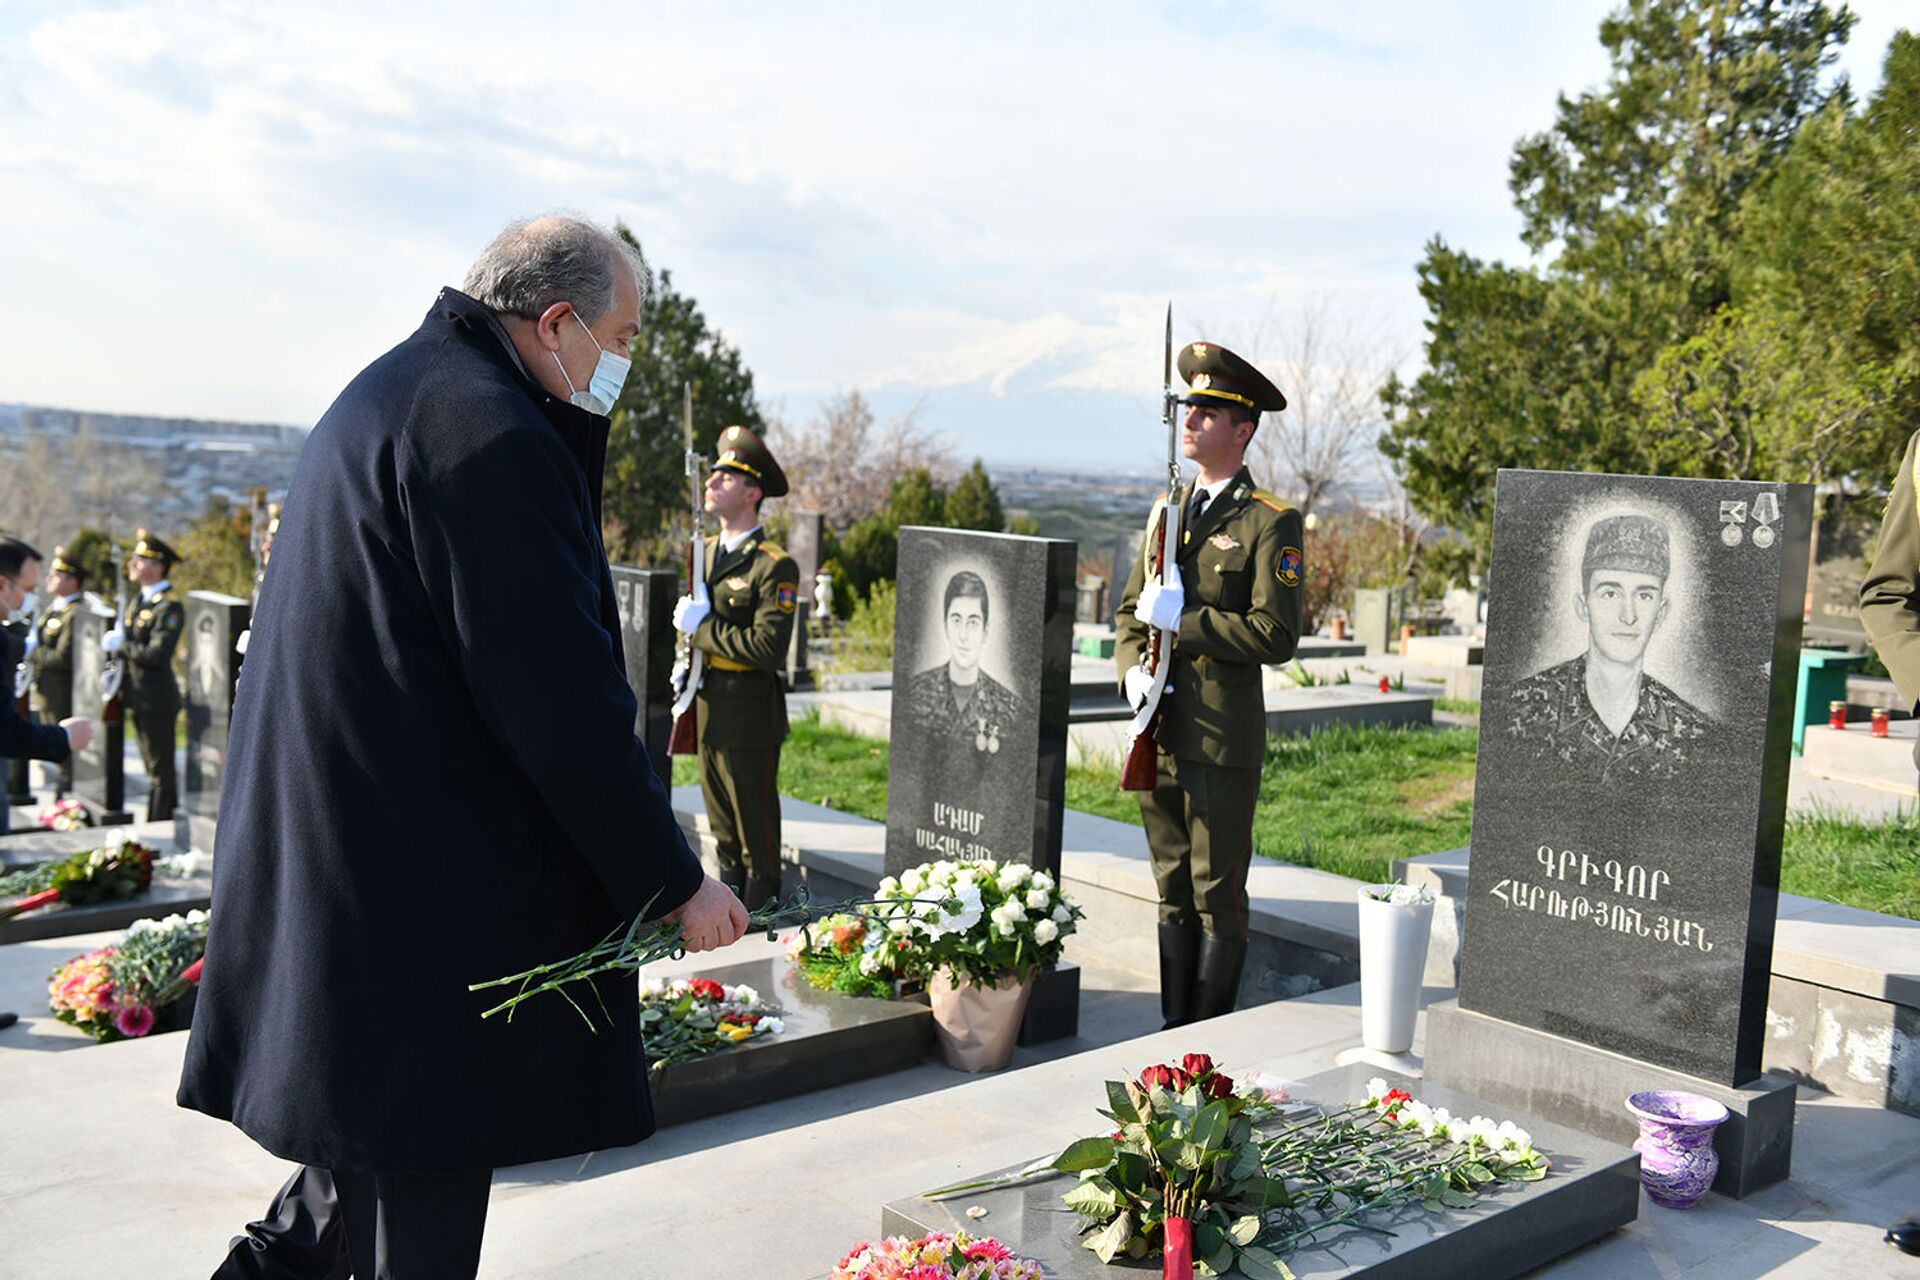 ՀՀ նախագահը Եռաբլուրում ծաղիկներ է խոնարհել. նրան ուղեկցել են վիրավոր զինվորները - Sputnik Արմենիա, 1920, 02.04.2021